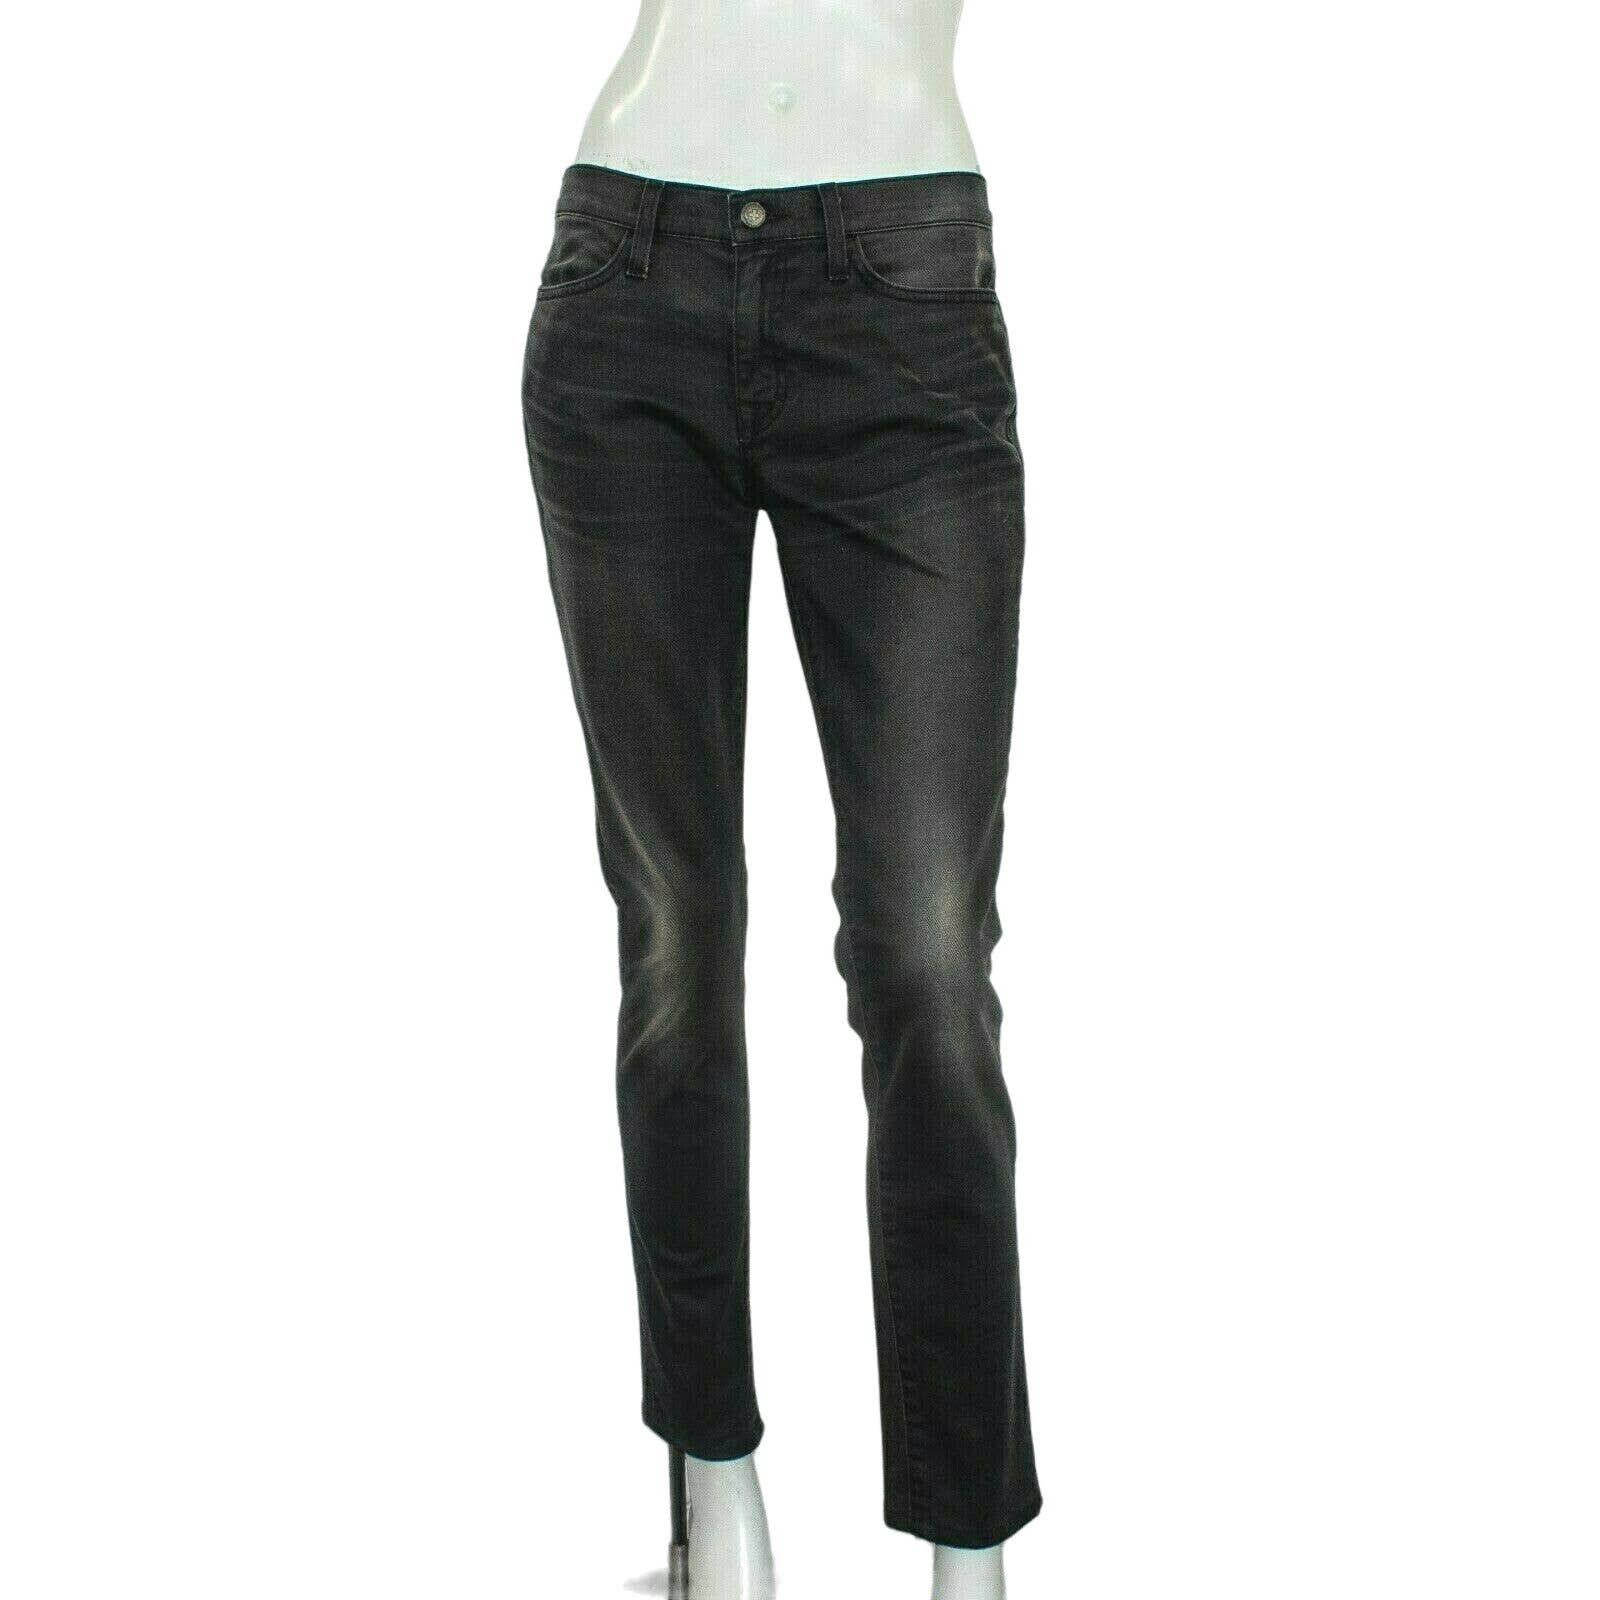 Imogene + Willie Imogene + Willie Women's Lucy Skinny Jeans in Black ...